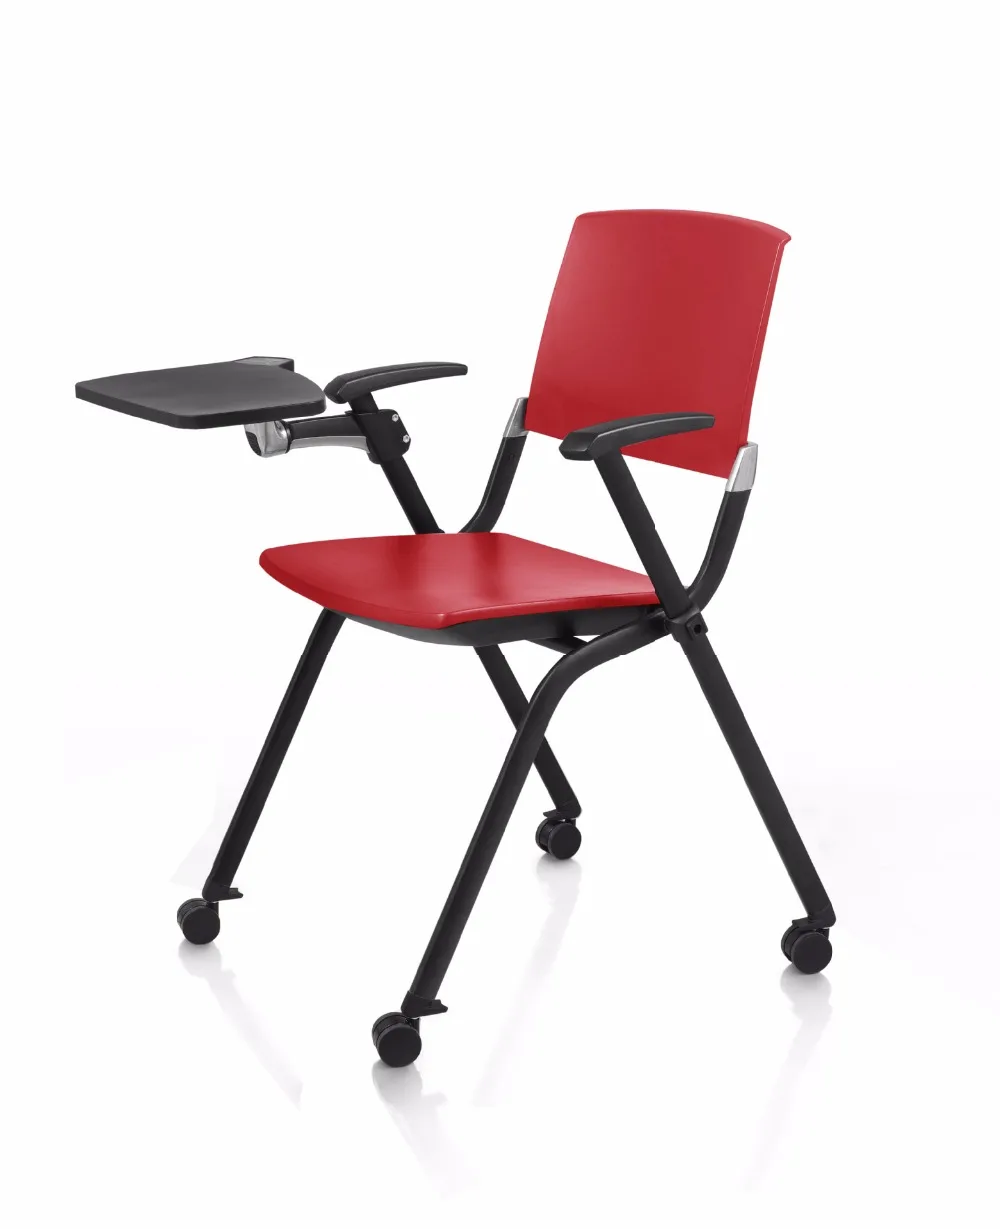 Председатель конференции коммерческая мебель офисная мебель складной стул с доска офисные стулья, кресла для обучения 572*602*830